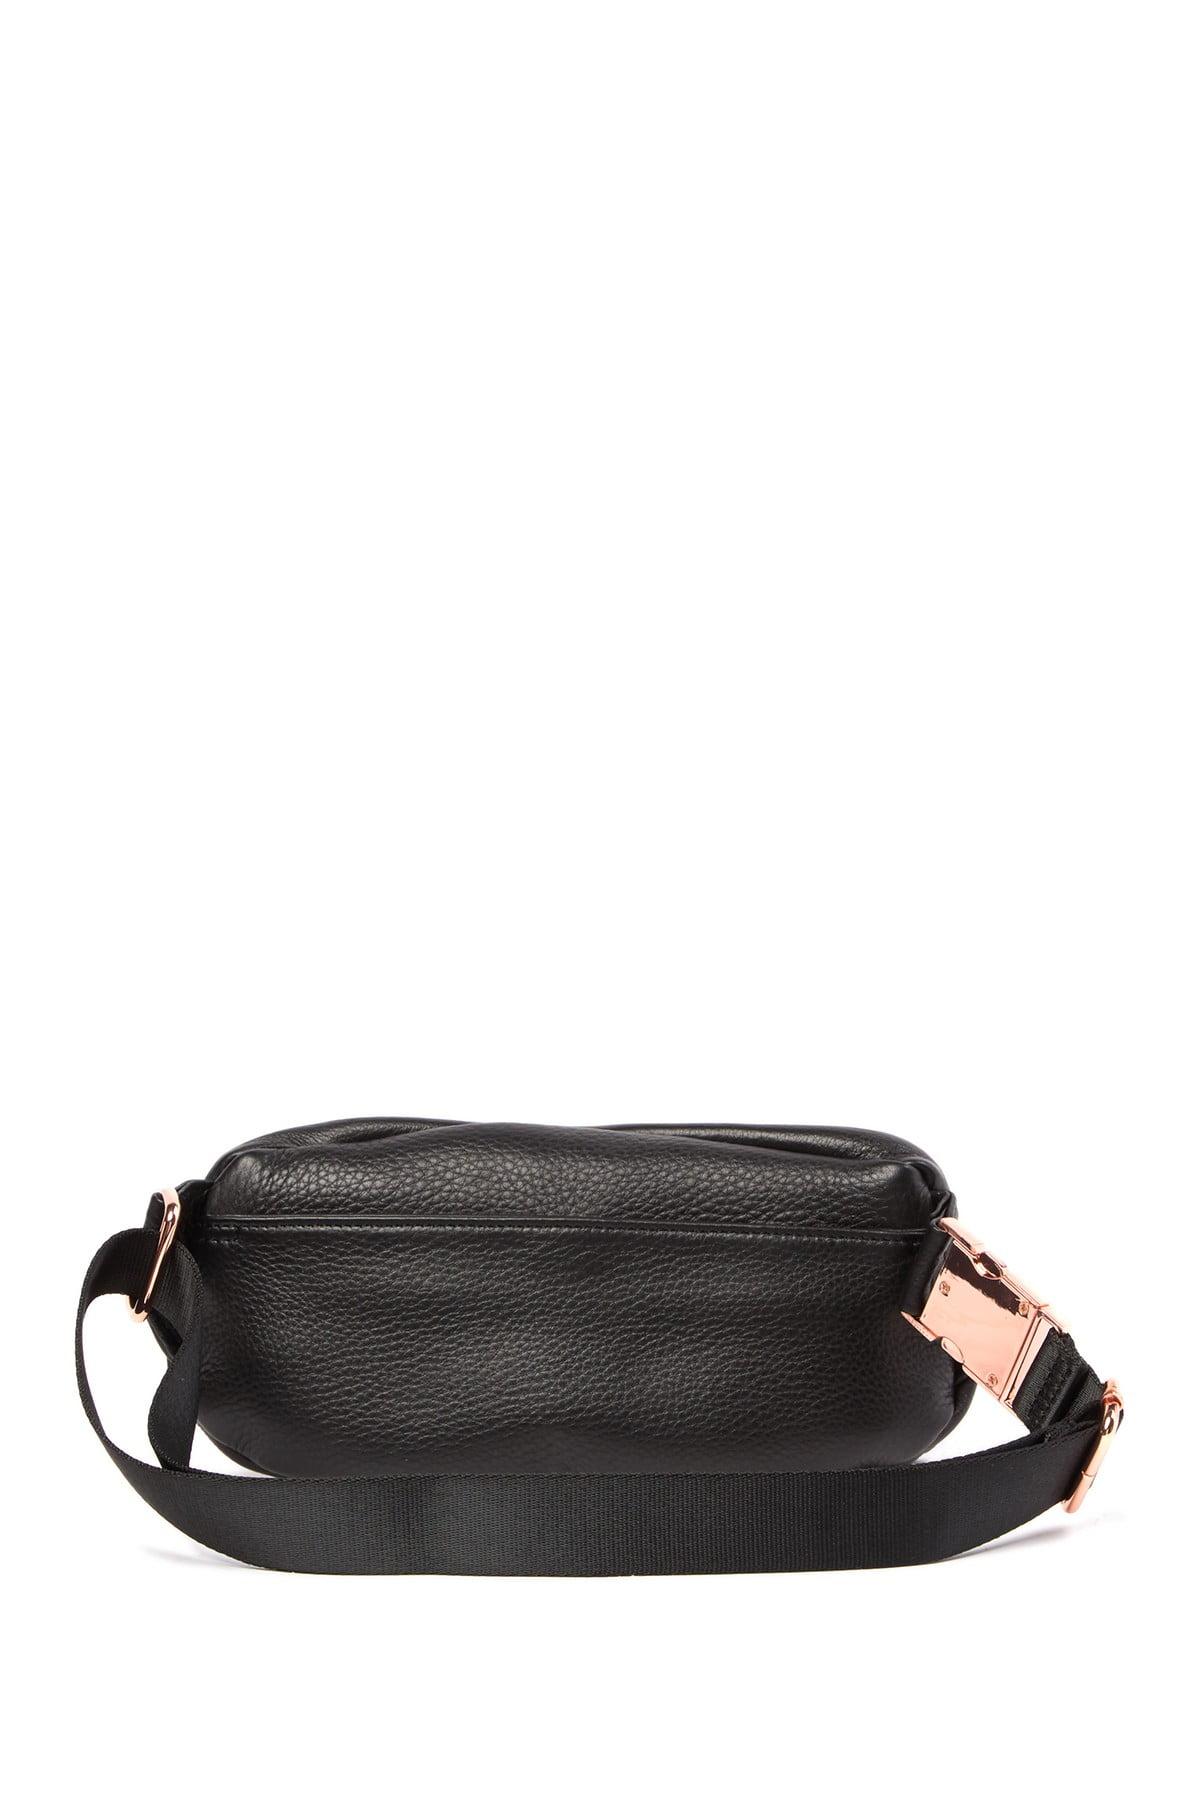 Aimee Kestenberg Milan Leather Belt Bag in Black | Lyst